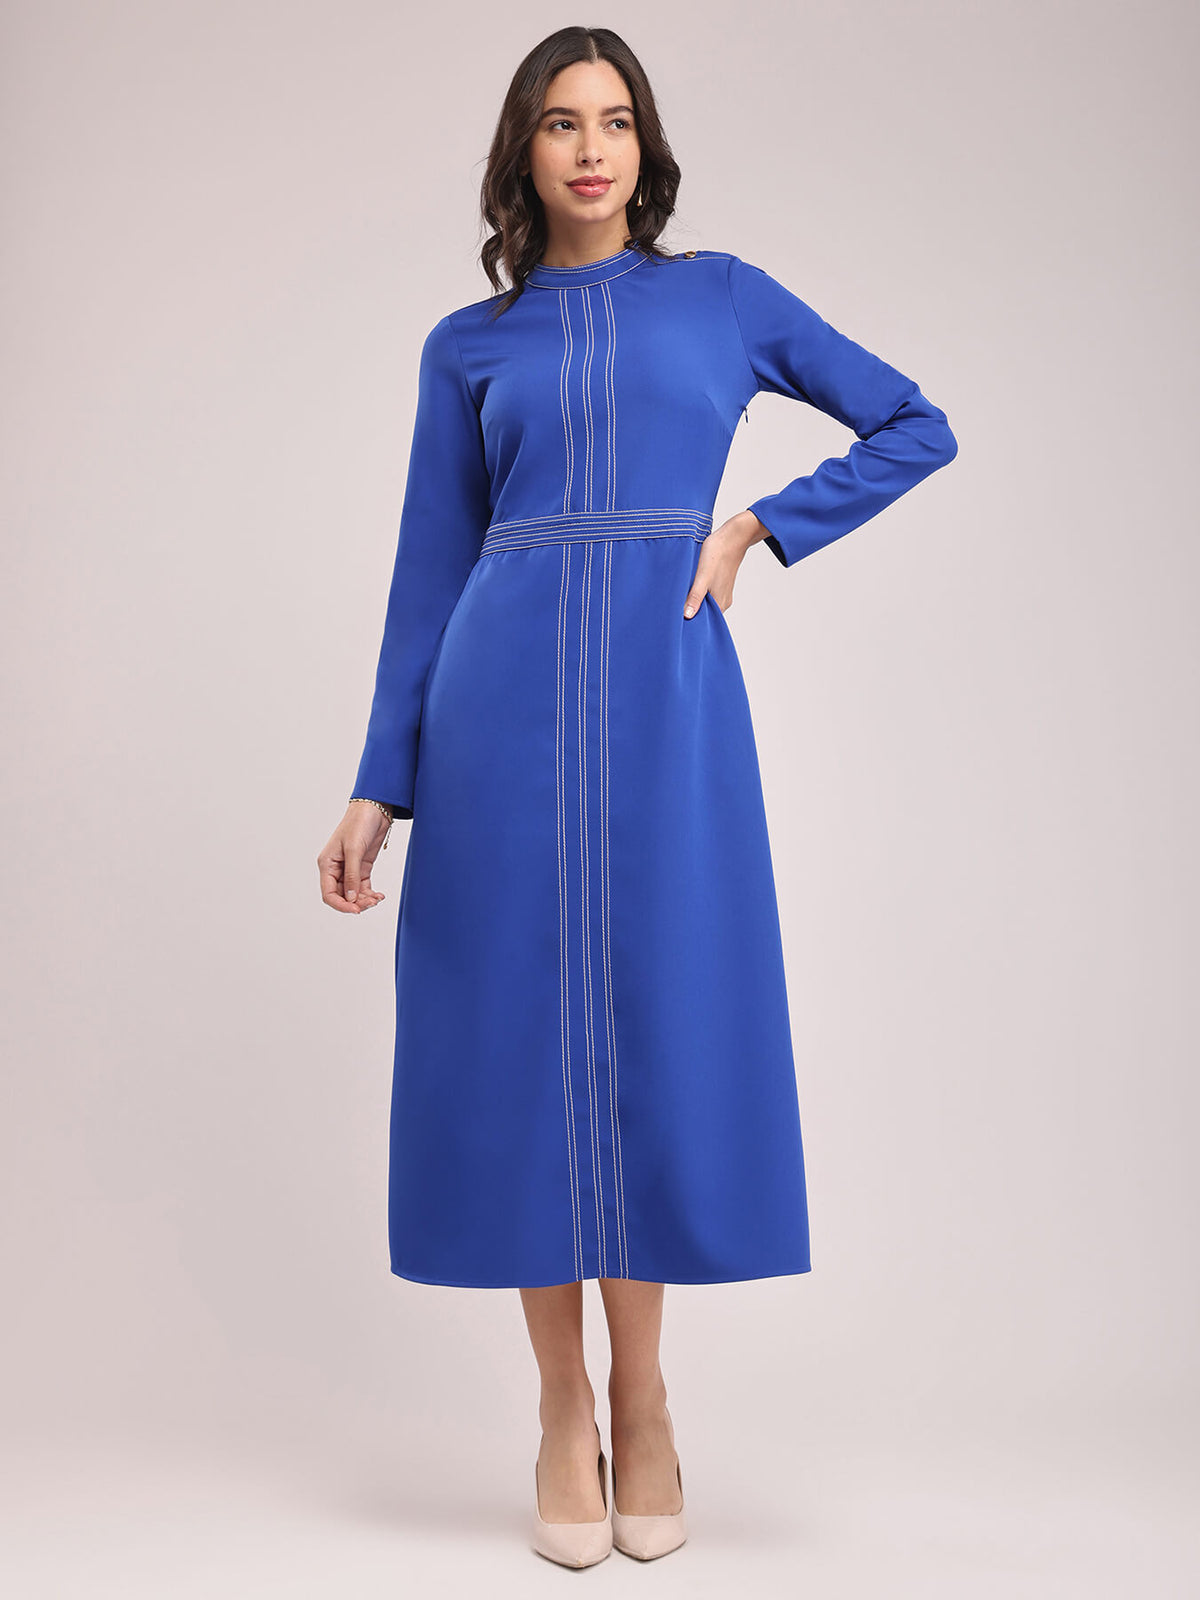 Round Neck Contrast Stitch Dress - Royal Blue